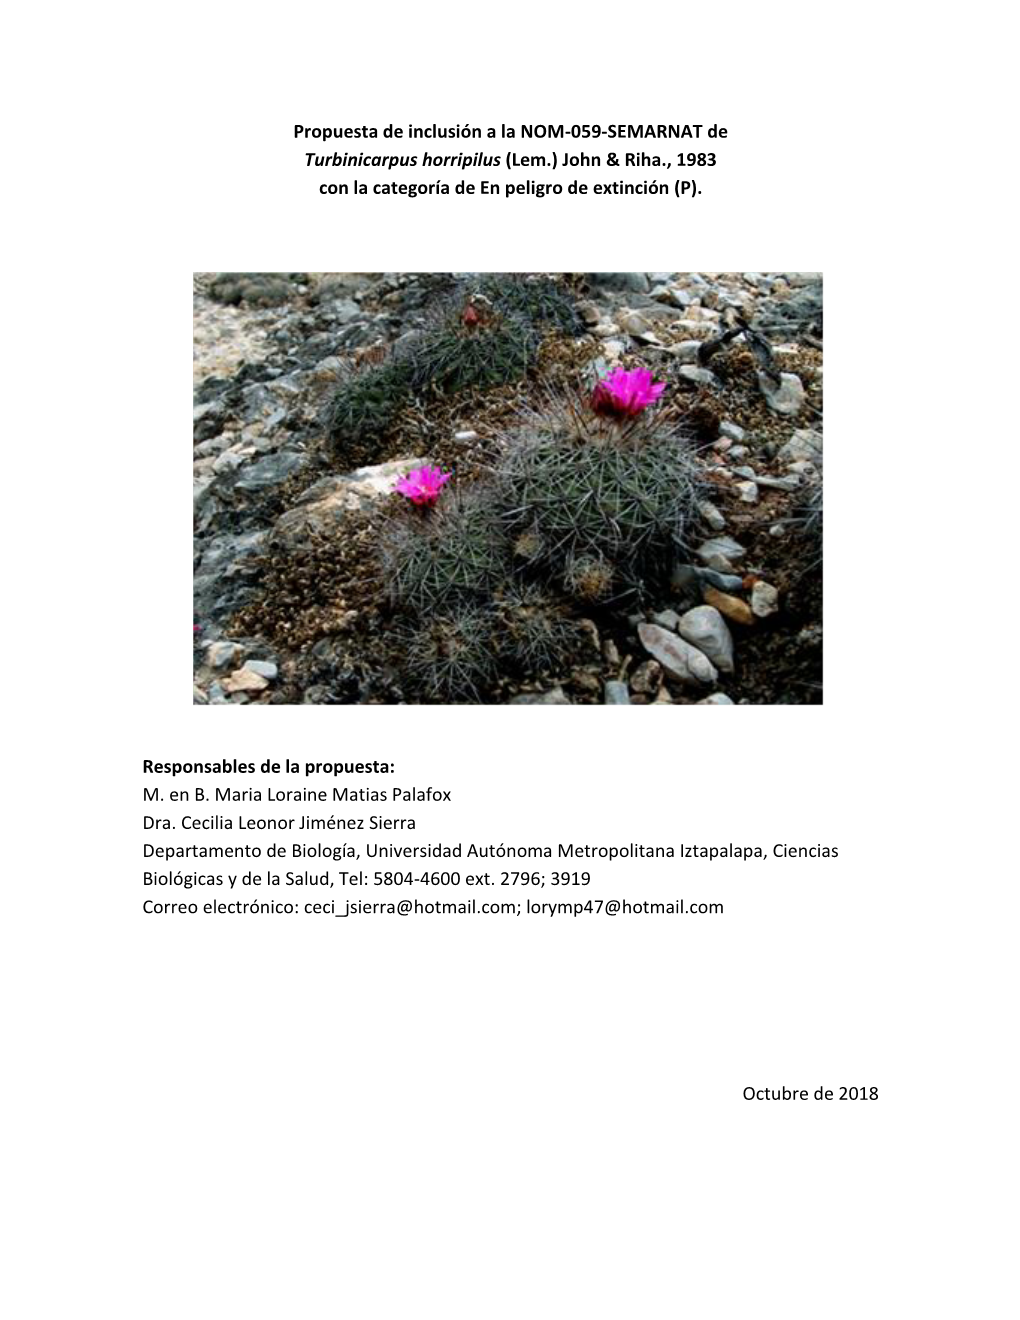 Propuesta De Inclusión a La NOM-059-SEMARNAT De Turbinicarpus Horripilus (Lem.) John & Riha., 1983 Con La Categoría De En Peligro De Extinción (P)